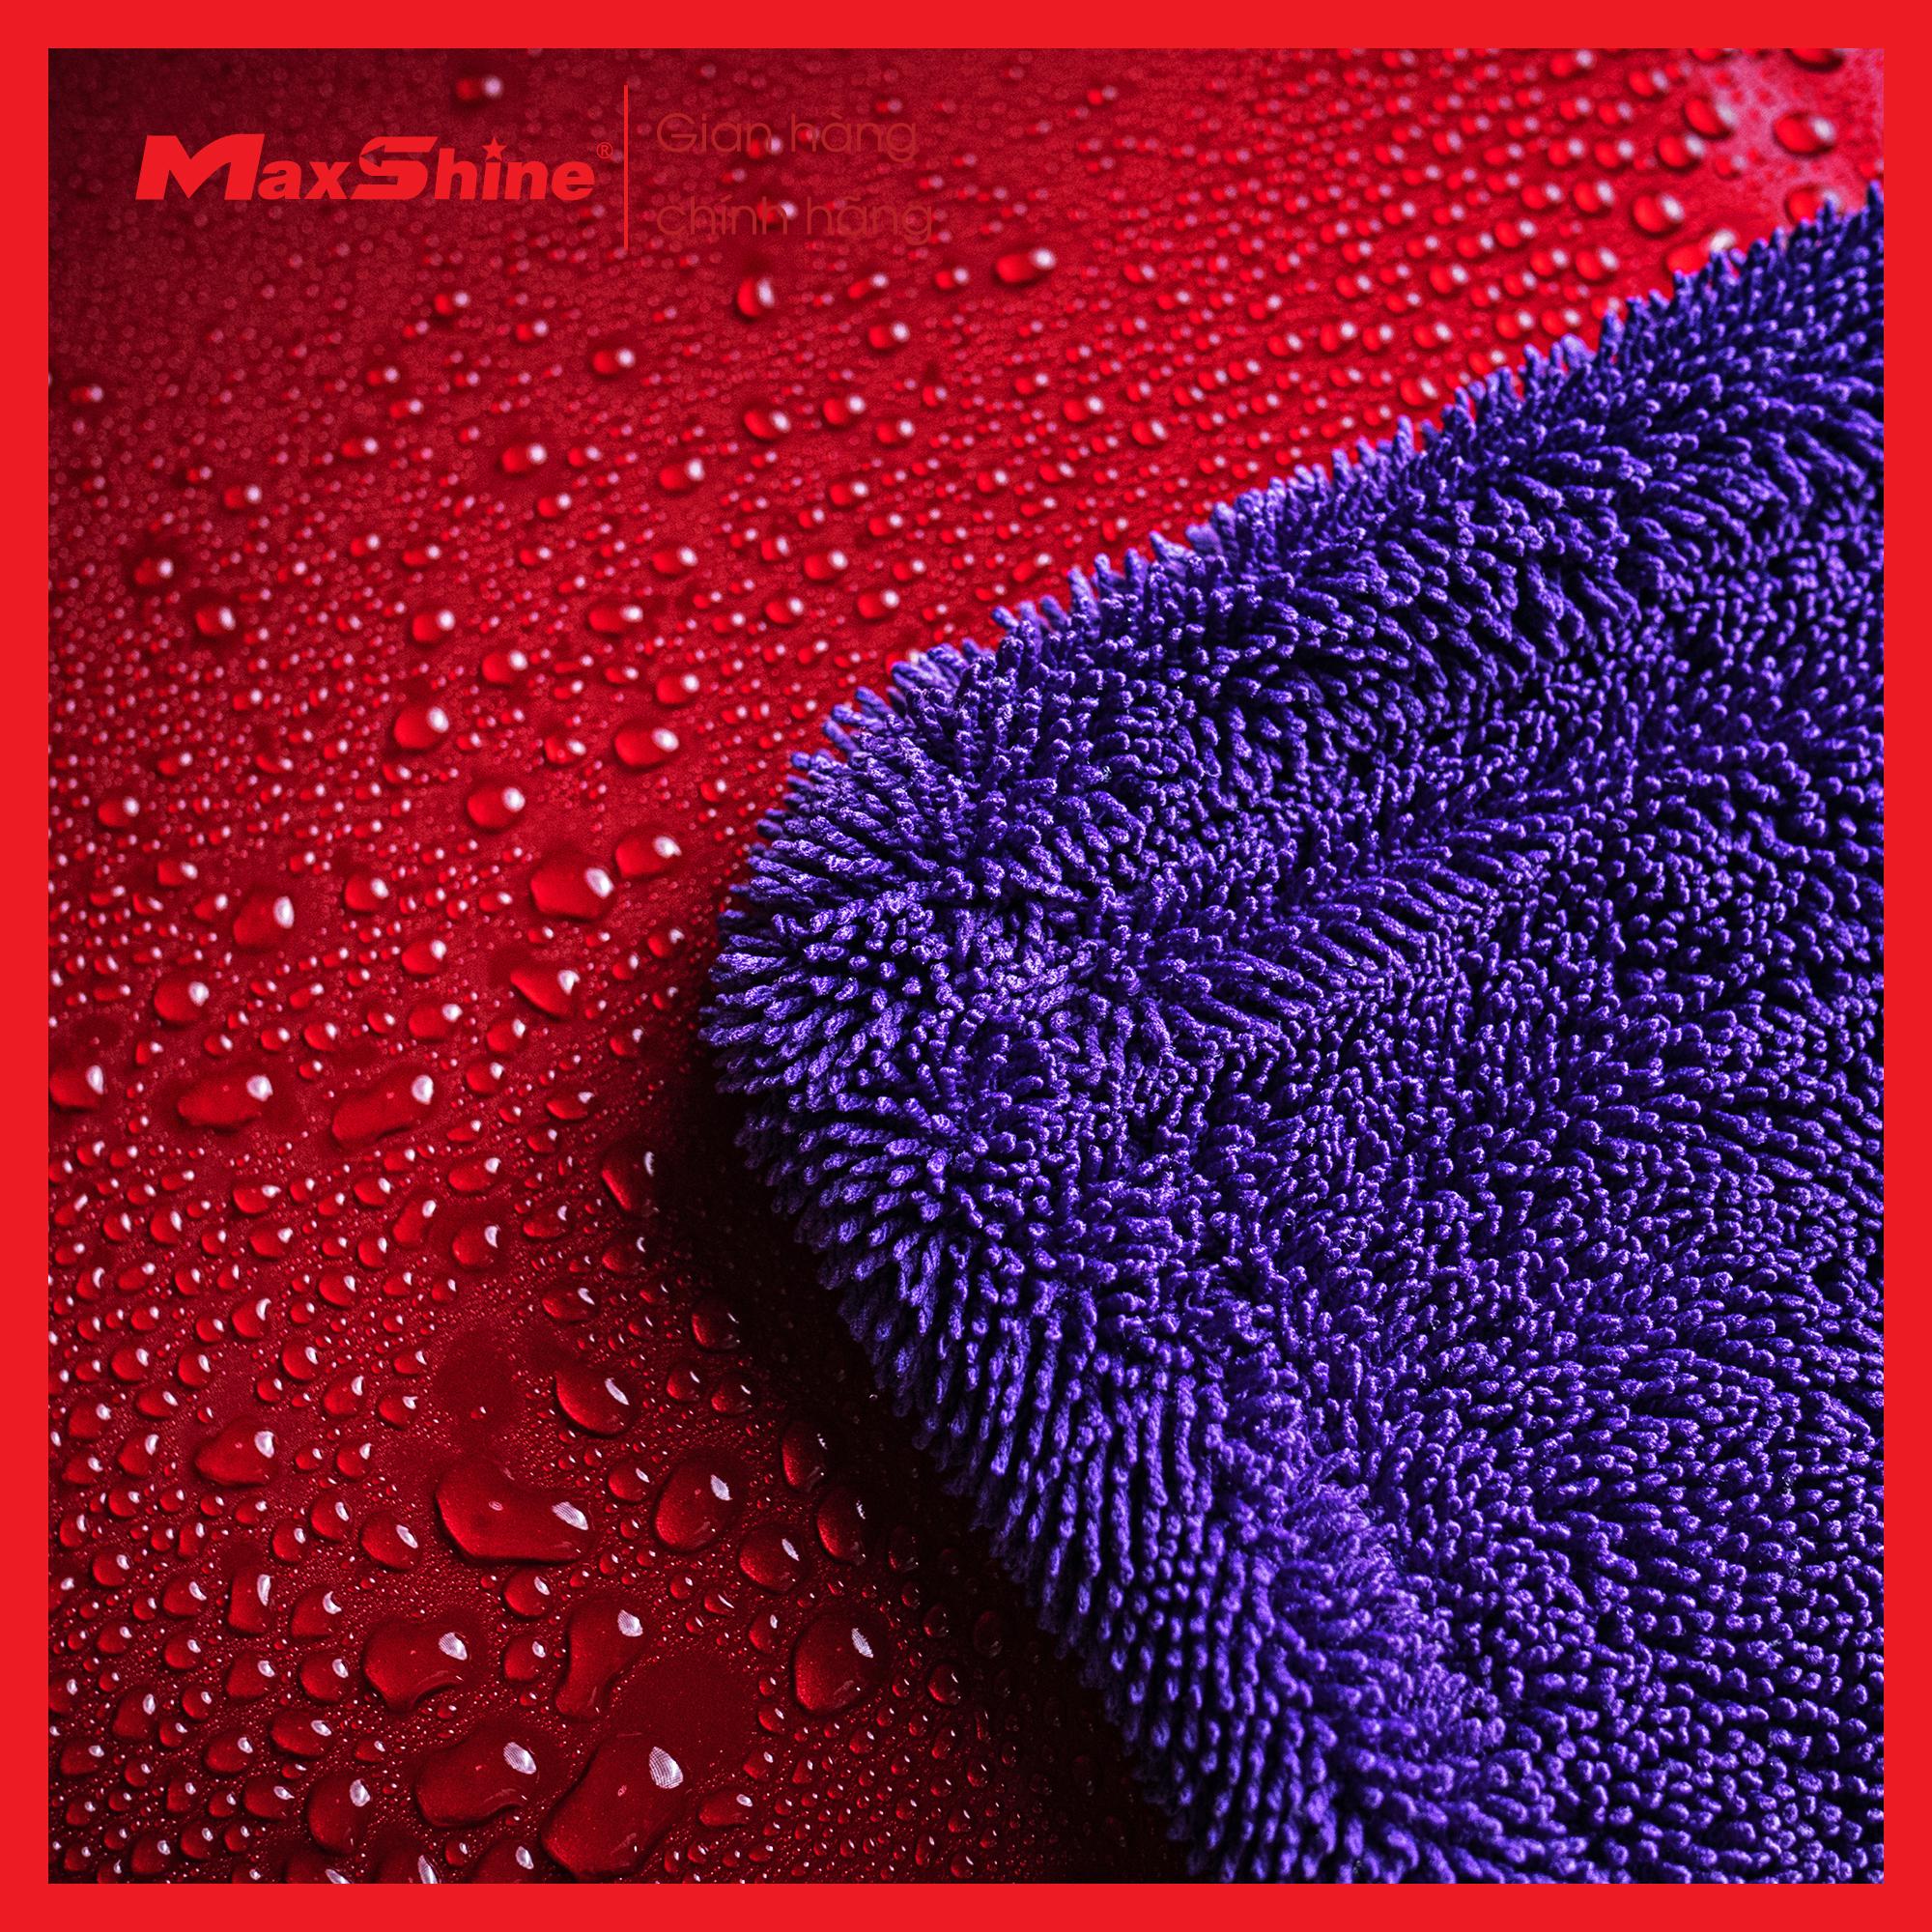 Khăn lau khô xe ô tô sợi xoắn bề mặt lớn Maxshine 1196090P làm bằng sợi Microfiber siêu mềm, không để bụi vải khi lau.